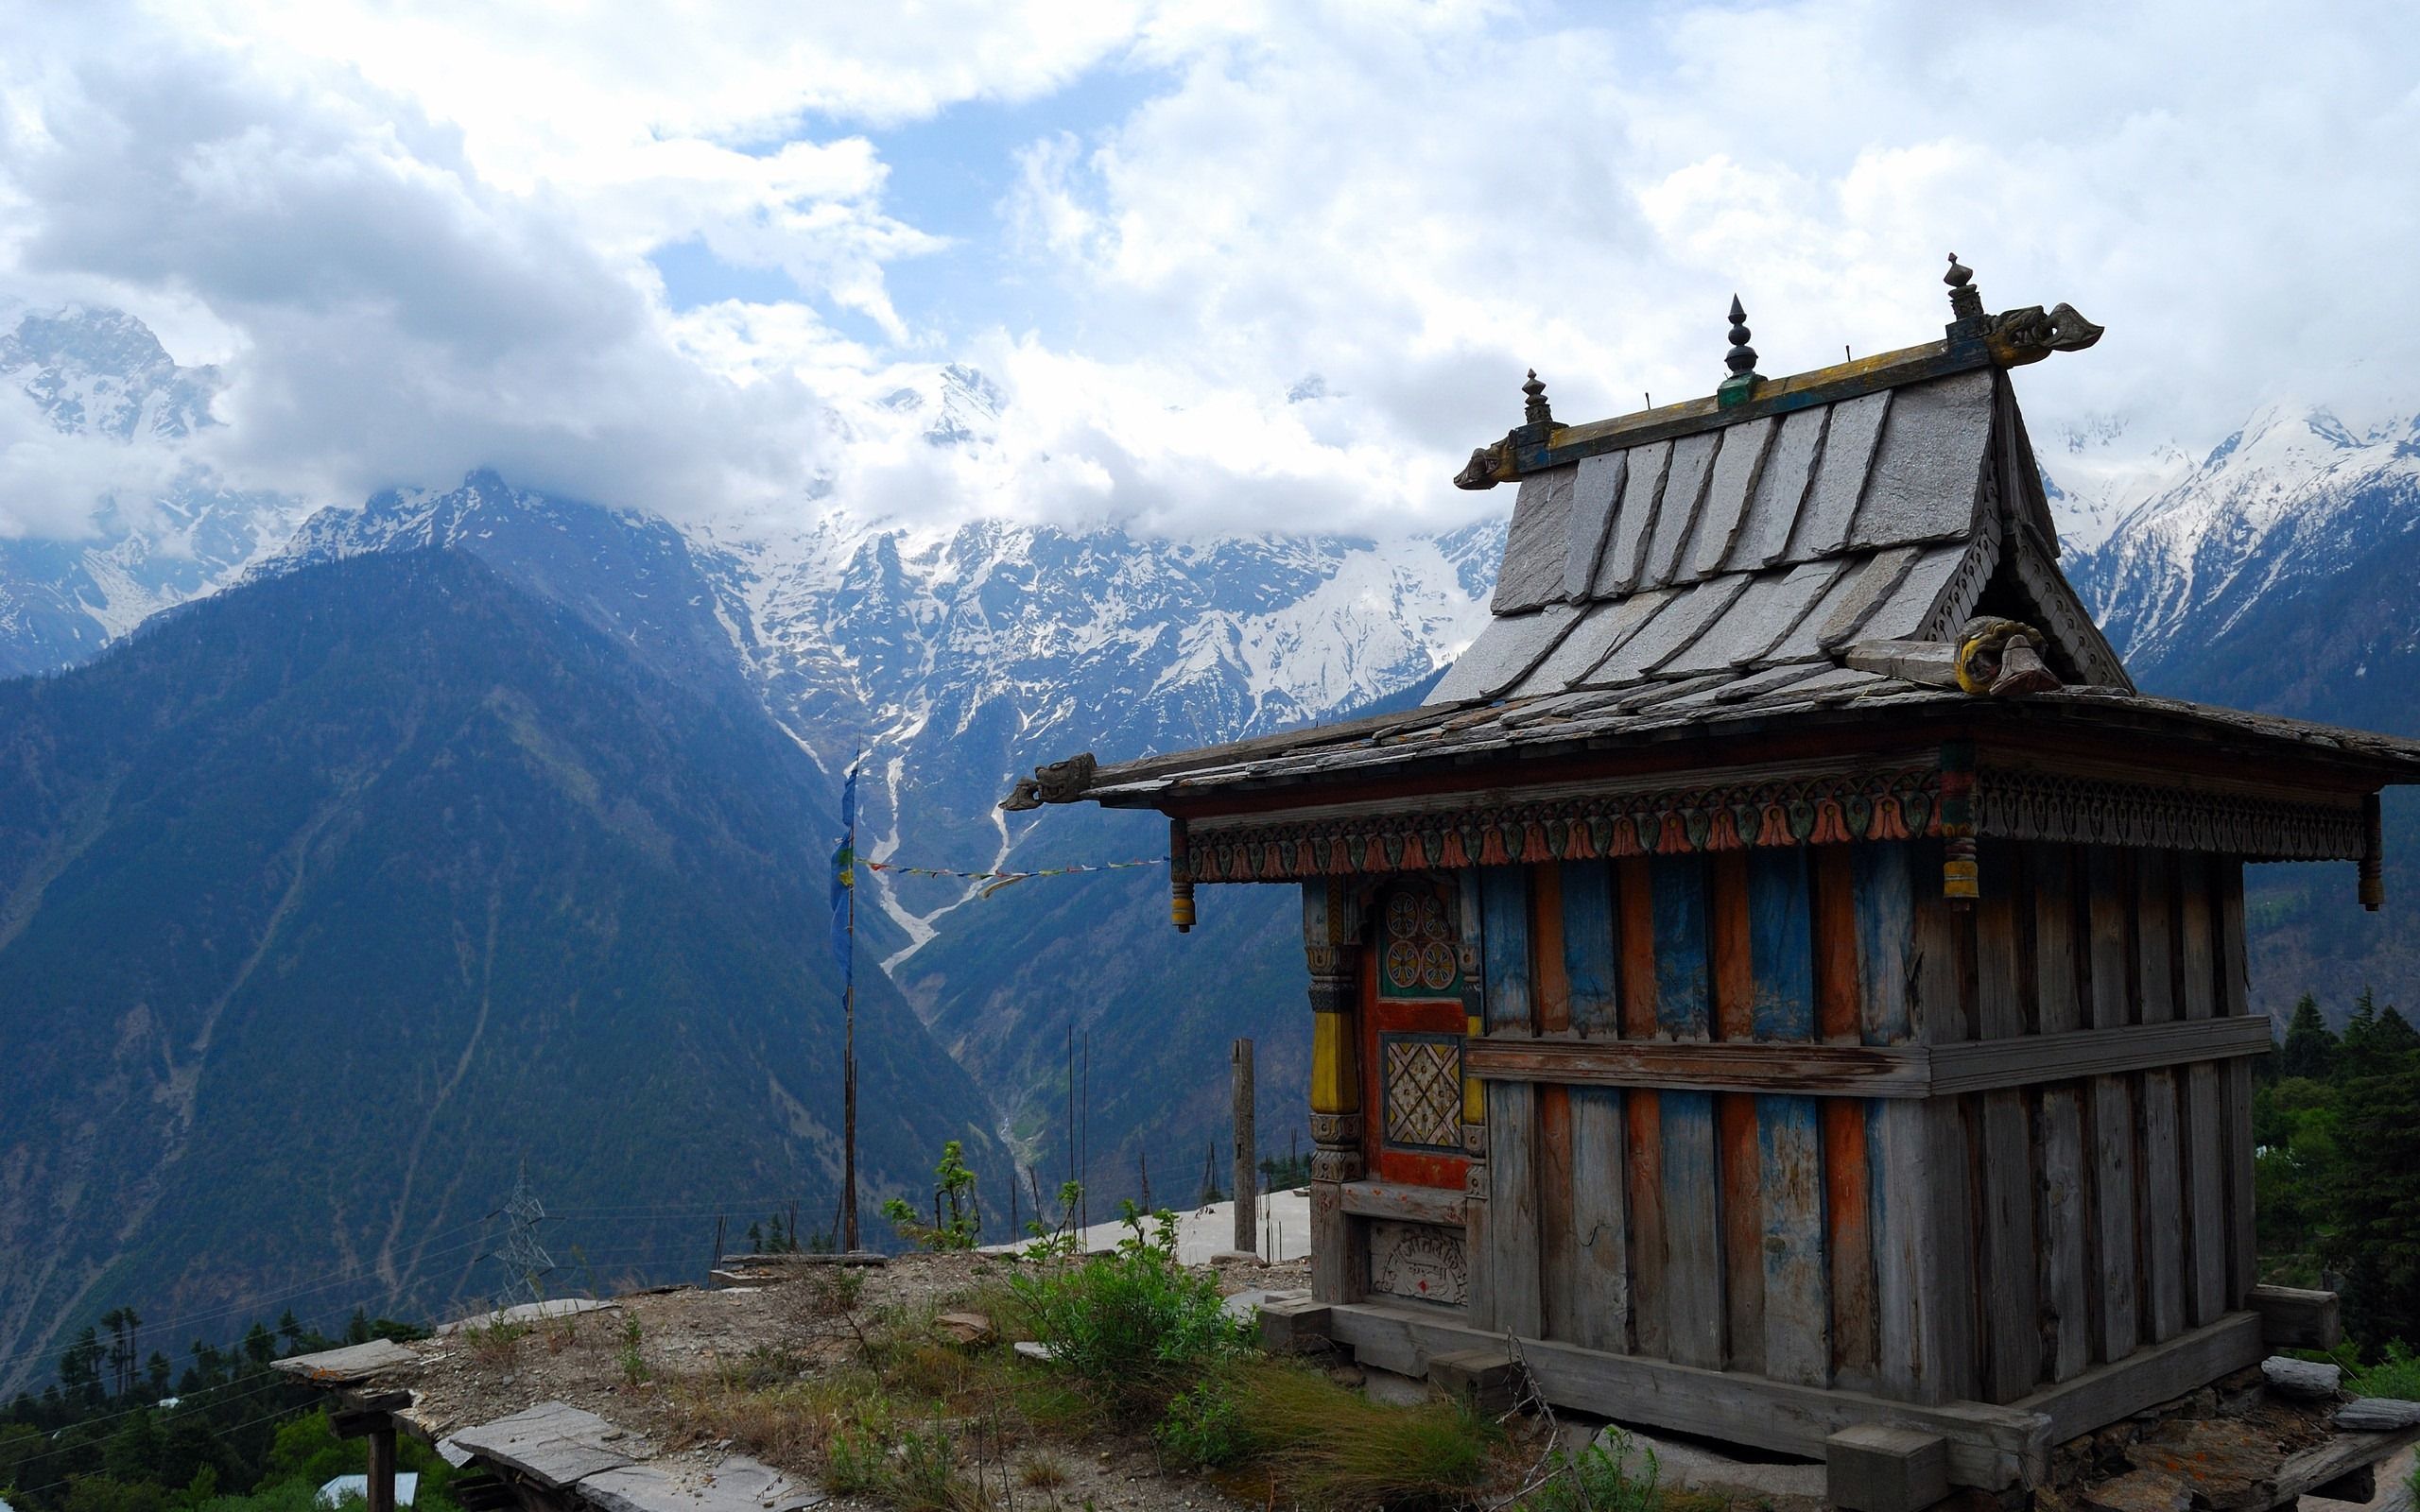 نمای معبد کوچک و چوبی در ارتفاعات تماشایی شهر تبت	